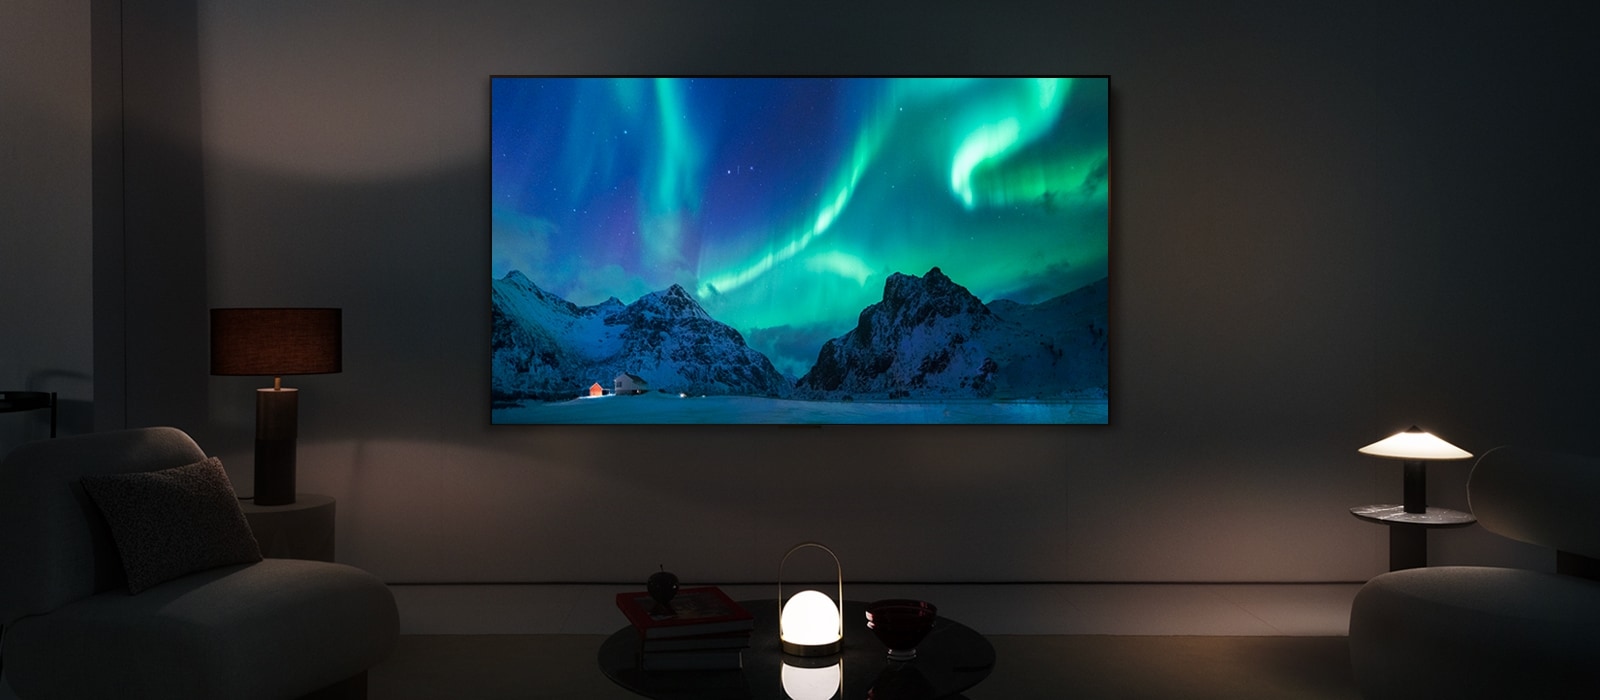 LG OLED TV v modernom obytnom priestore v noci. Na obrazovke sa zobrazuje polárna žiara s ideálnou úrovňou jasu.